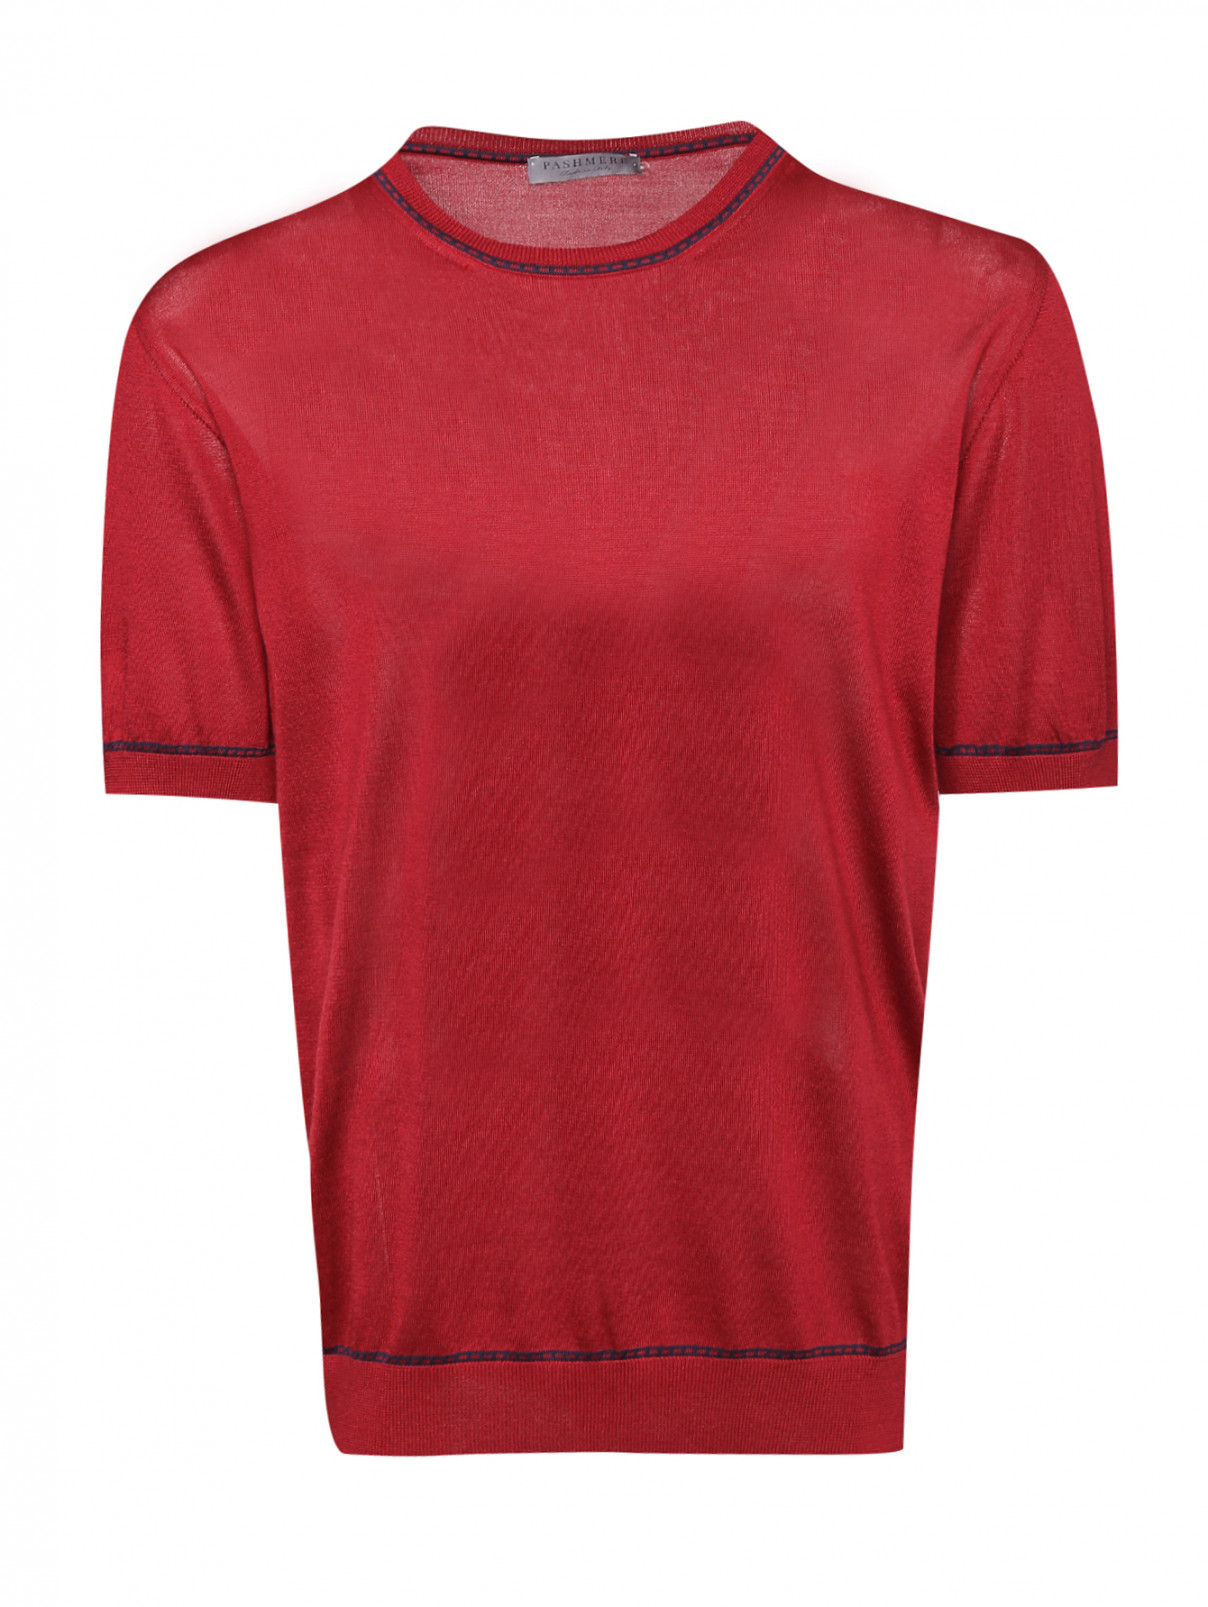 Джемпер из шелка с контрастной отделкой Pashmere  –  Общий вид  – Цвет:  Красный